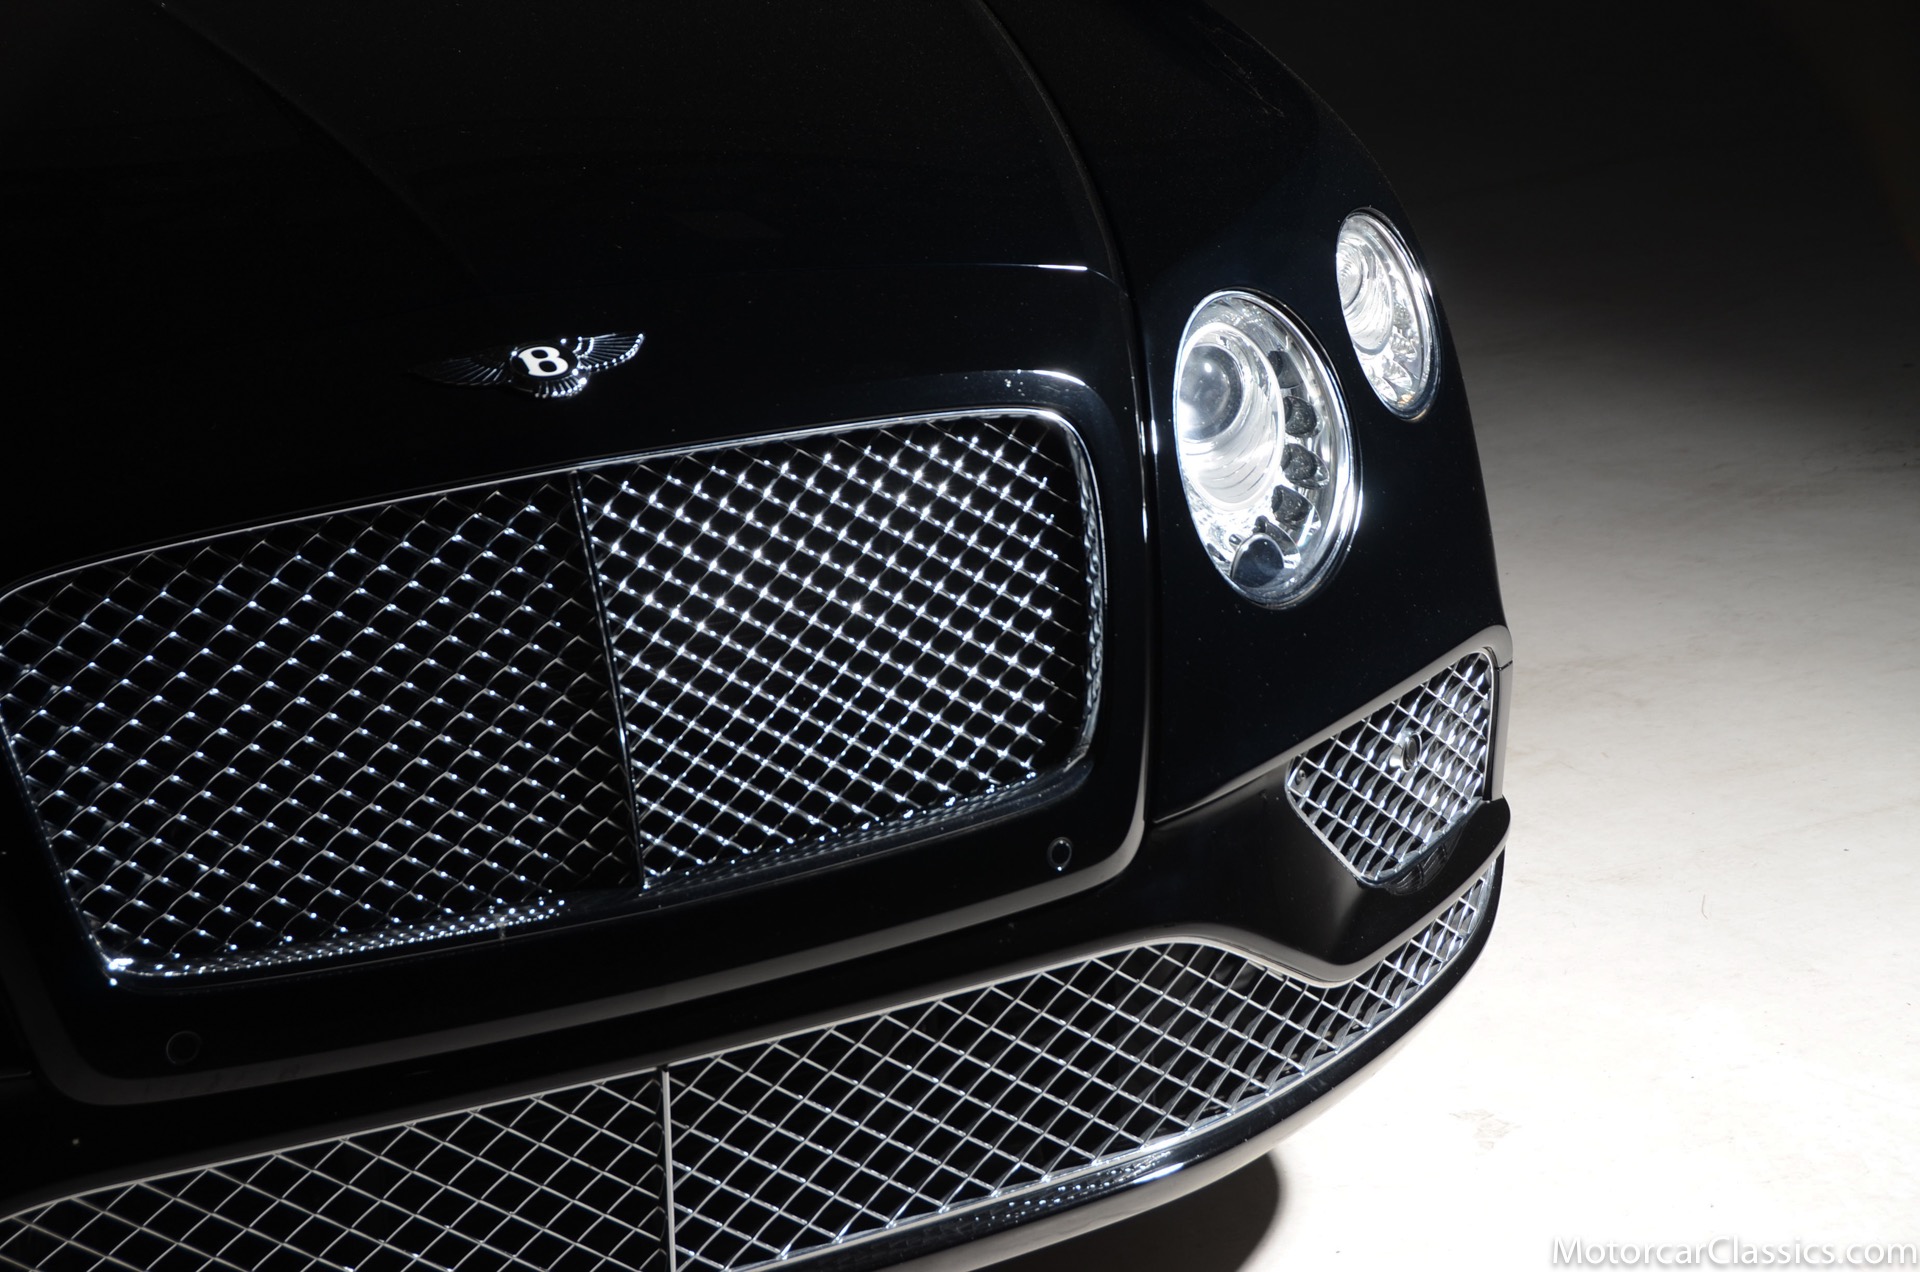 2016 Bentley Continental GT